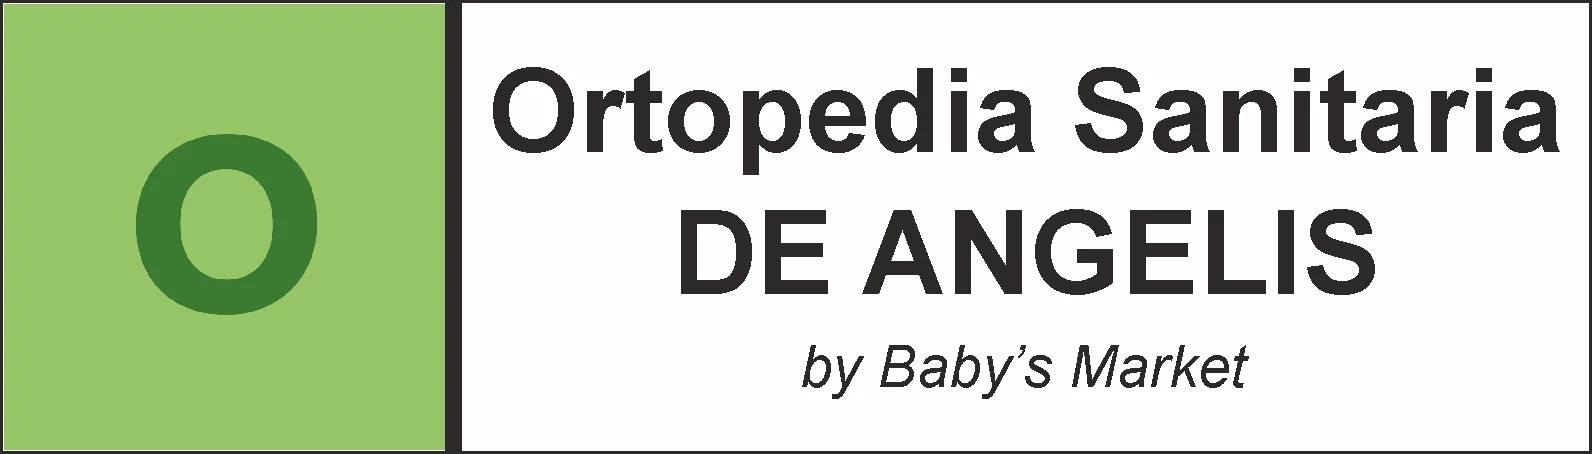 SANITARIA BABY'S MARKET - NEGOZIO DI ORTOPEDIA